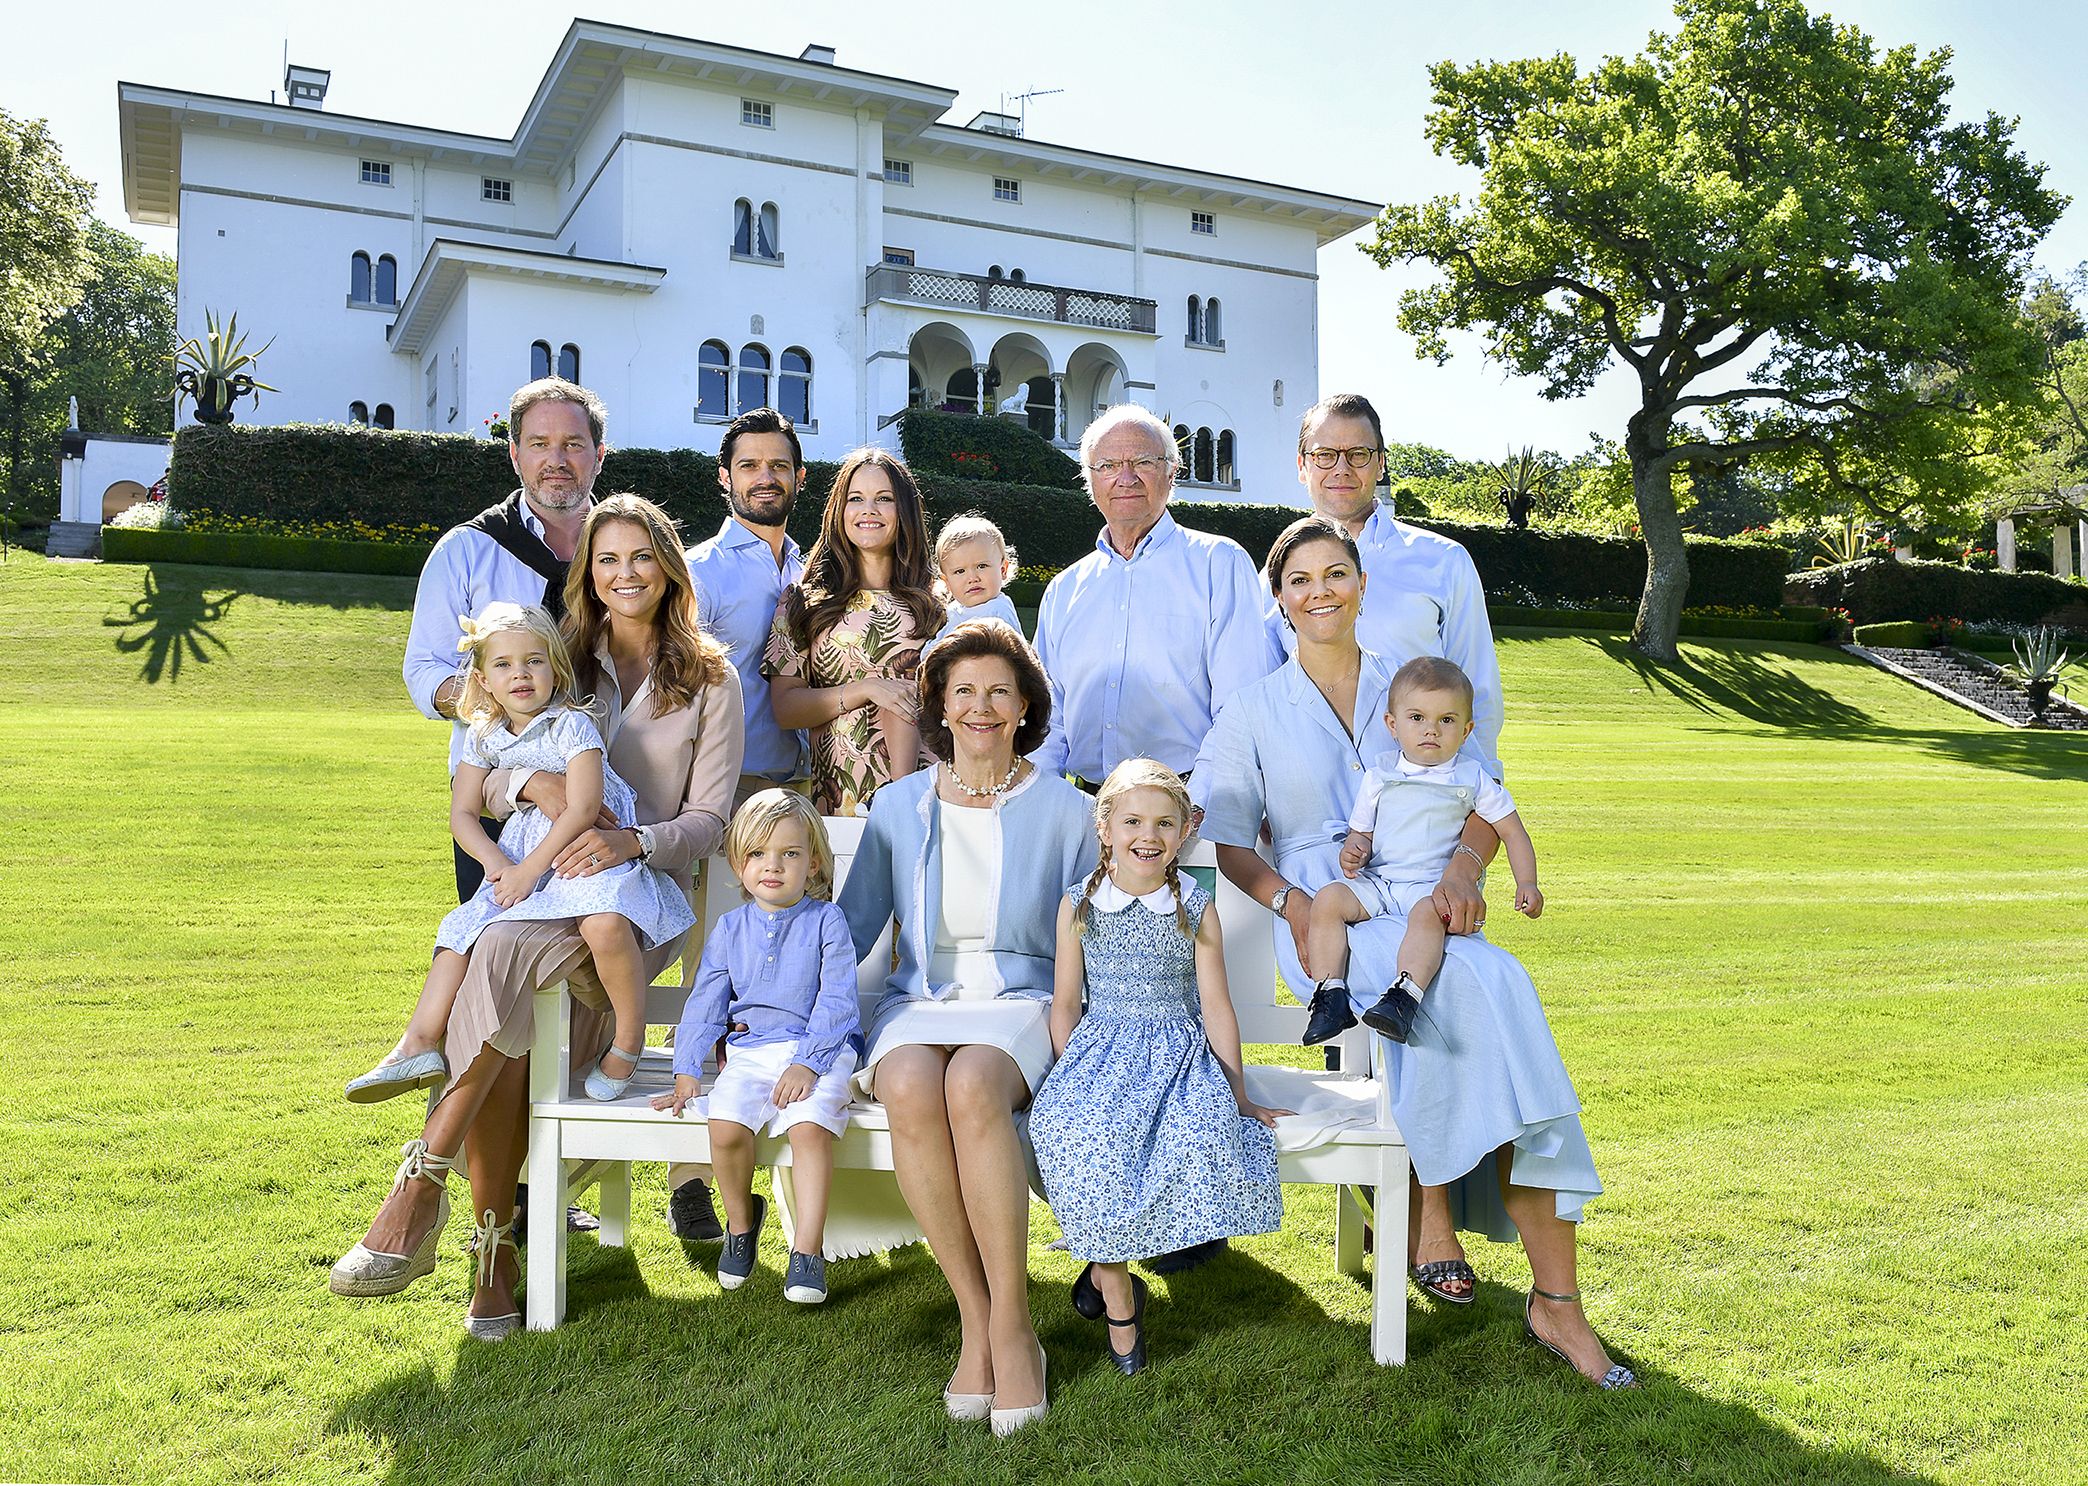 Los fans de 'The Crown' están de enhorabuena: ahora es el turno de la Familia Real de Suecia. Foto: https://www.kungahuset.se